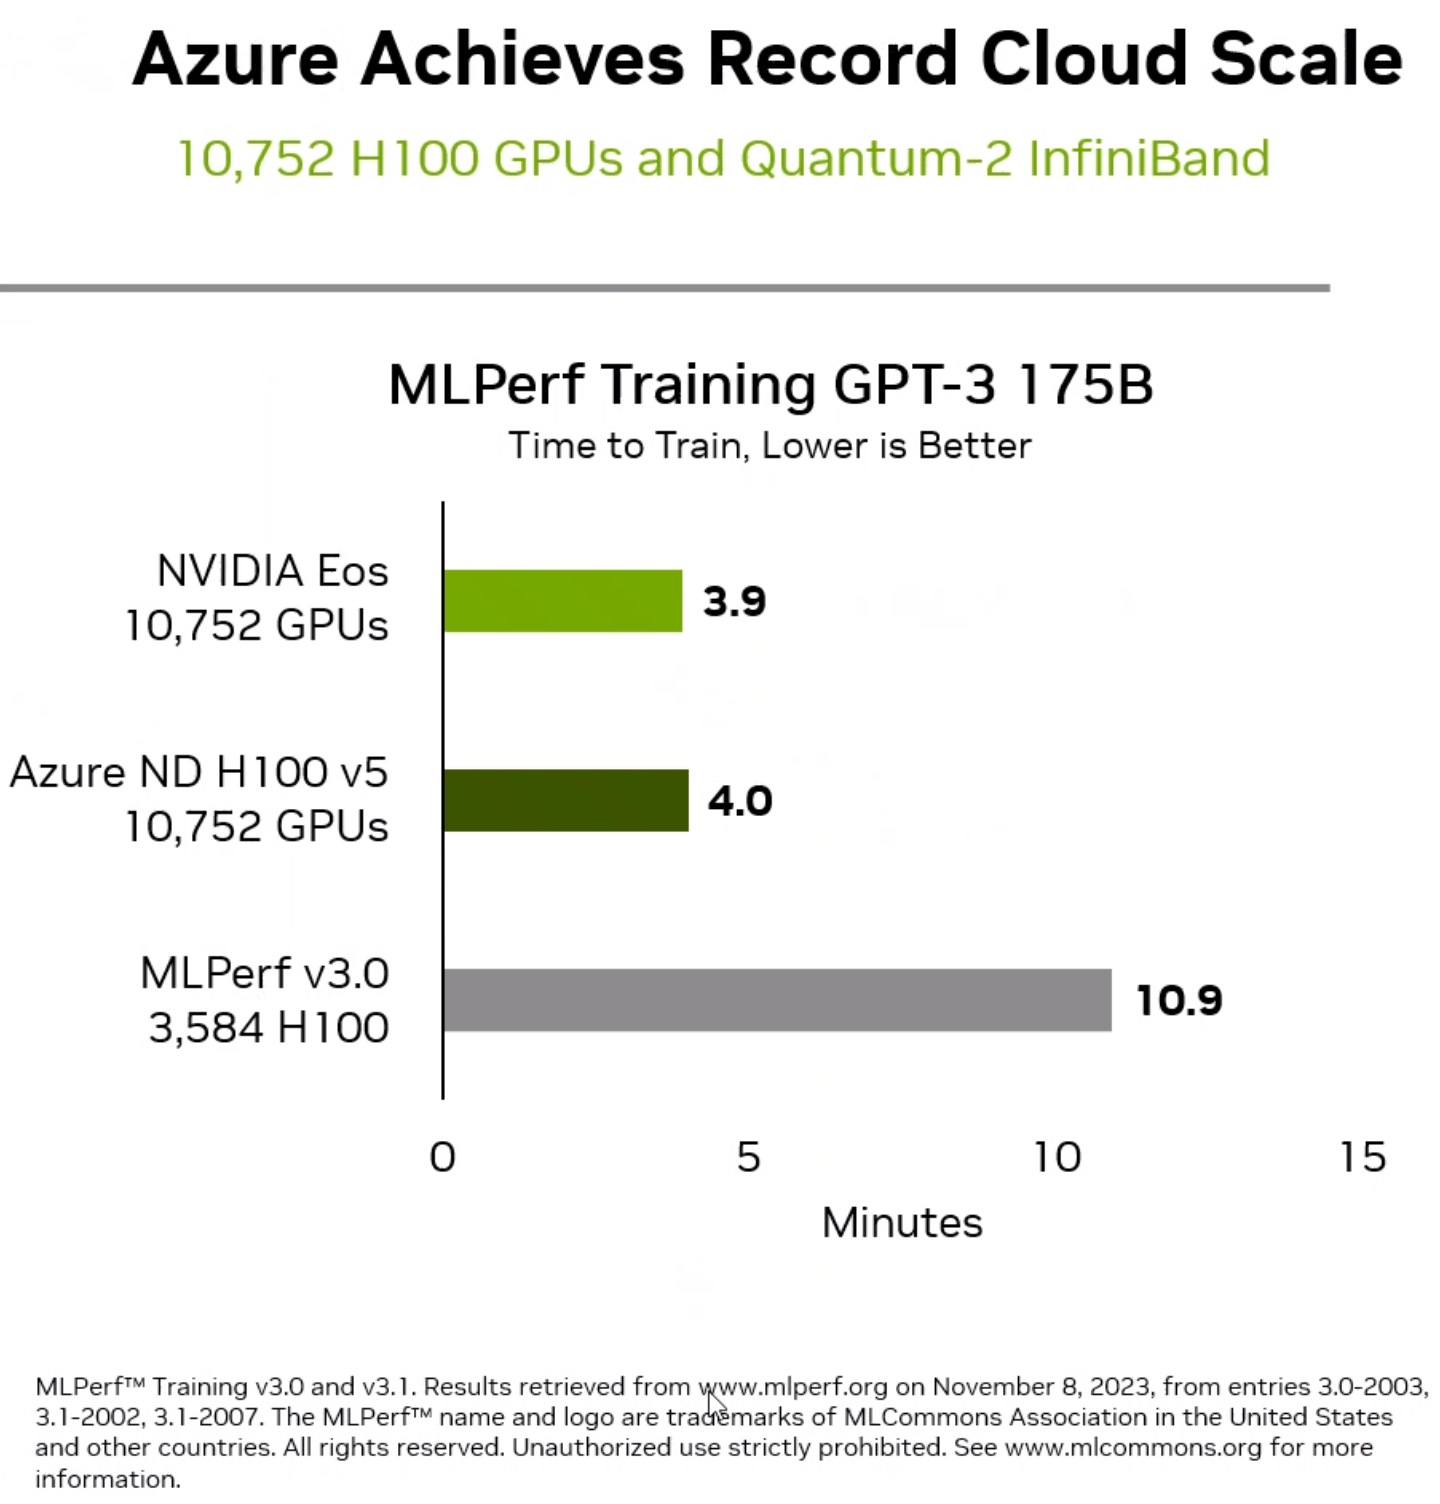 由10,752組H100 GPU組成的Microsoft Azure雲端伺服器效能表現與Eos人工智慧超級電腦效能相差不到2%，展現在資料心和公有雲部署的高效率。